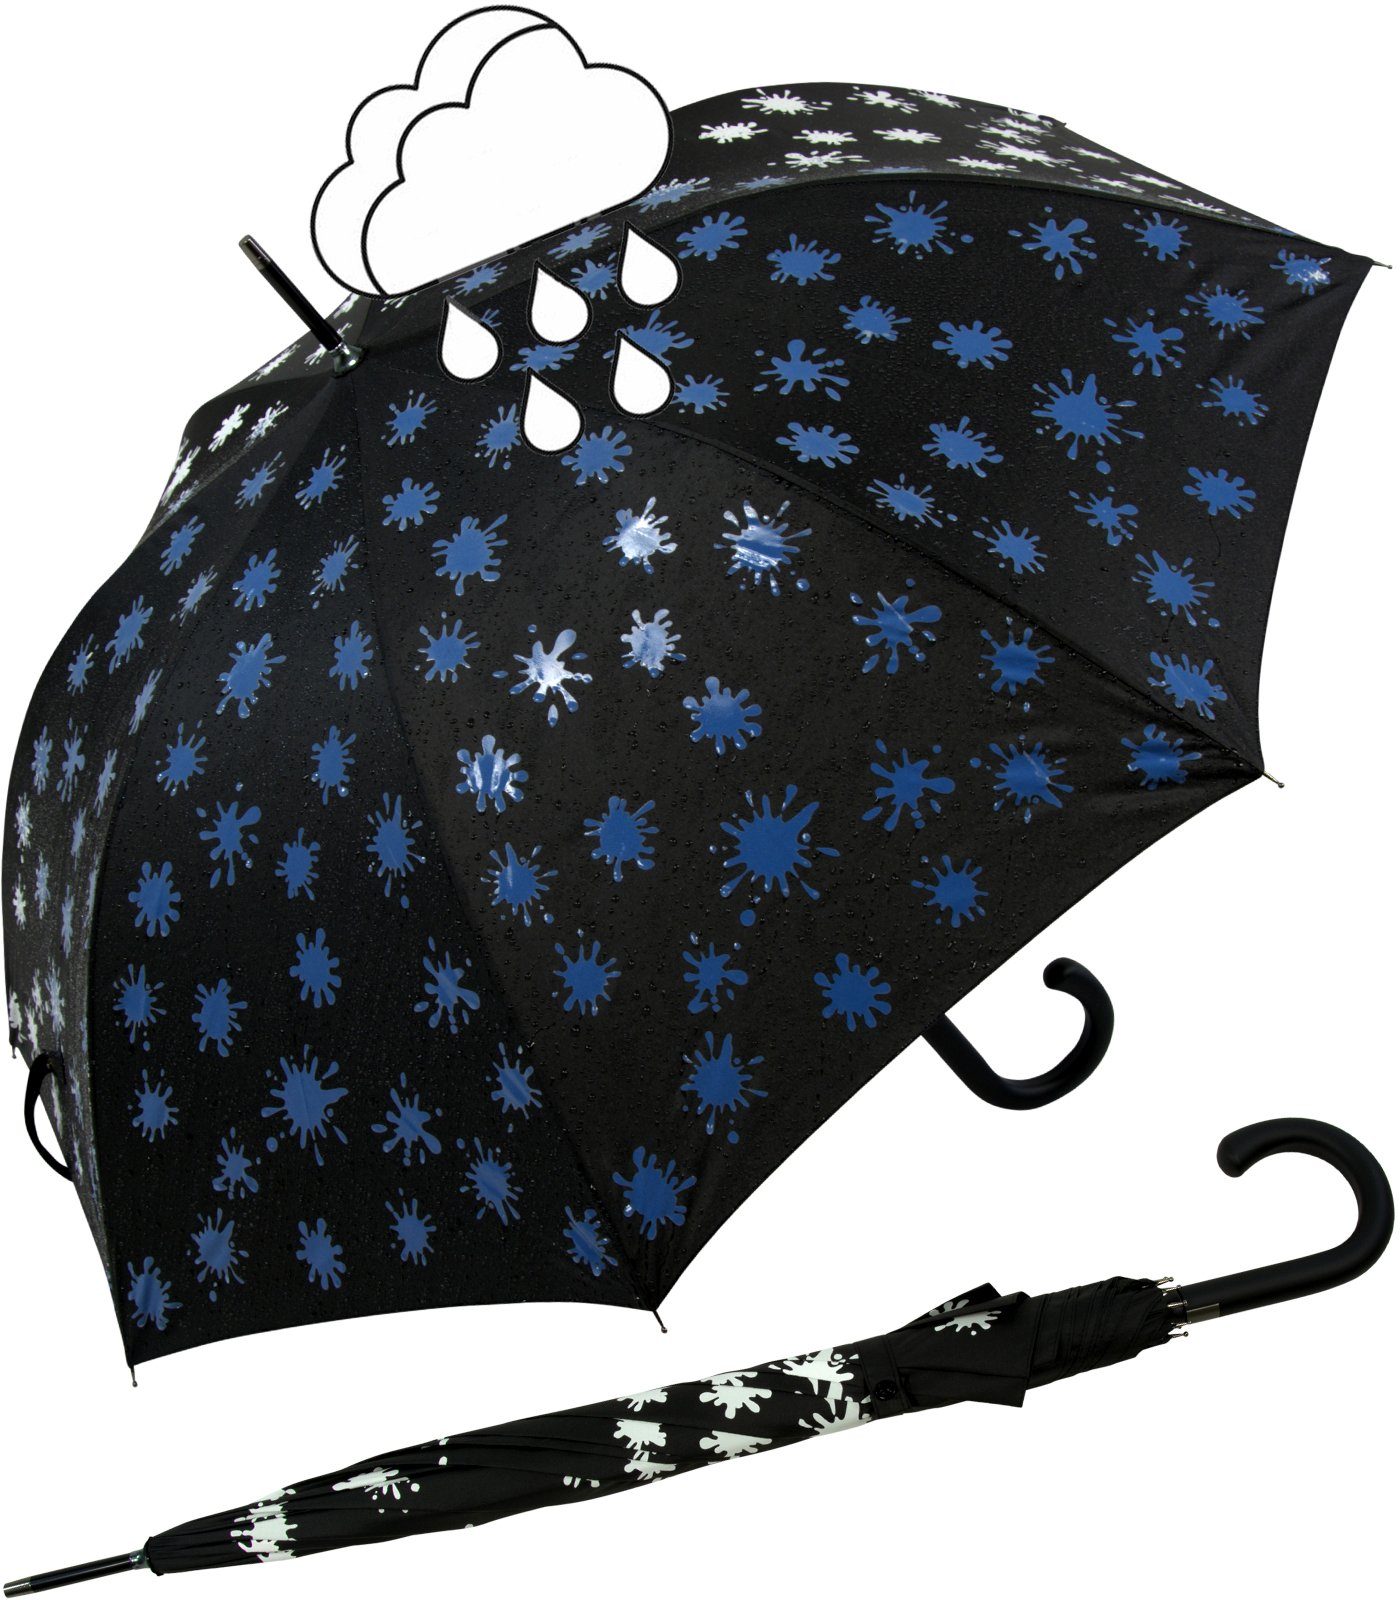 iX-brella Langregenschirm iX-brella Damenschirm mit Automatik und Wet Print, Farbänderung bei Nässe - Farbkleckse blau schwarz-weiß-blau | Stockschirme